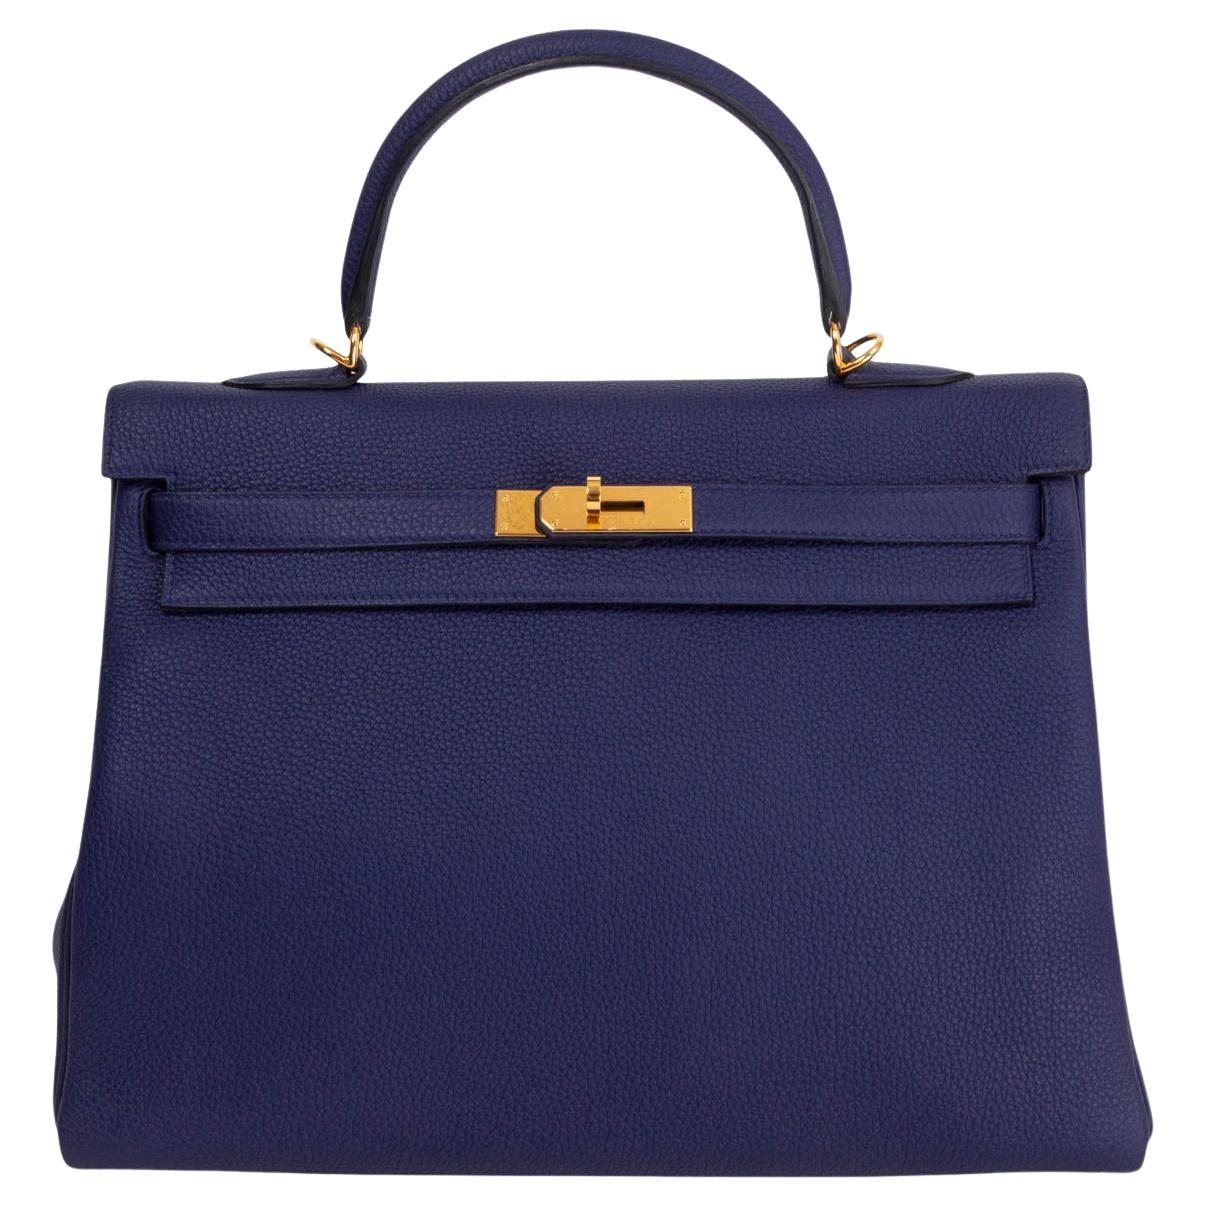 HERMES Encre blue Togo leather KELLY 35 RETOURNE Bag Gold